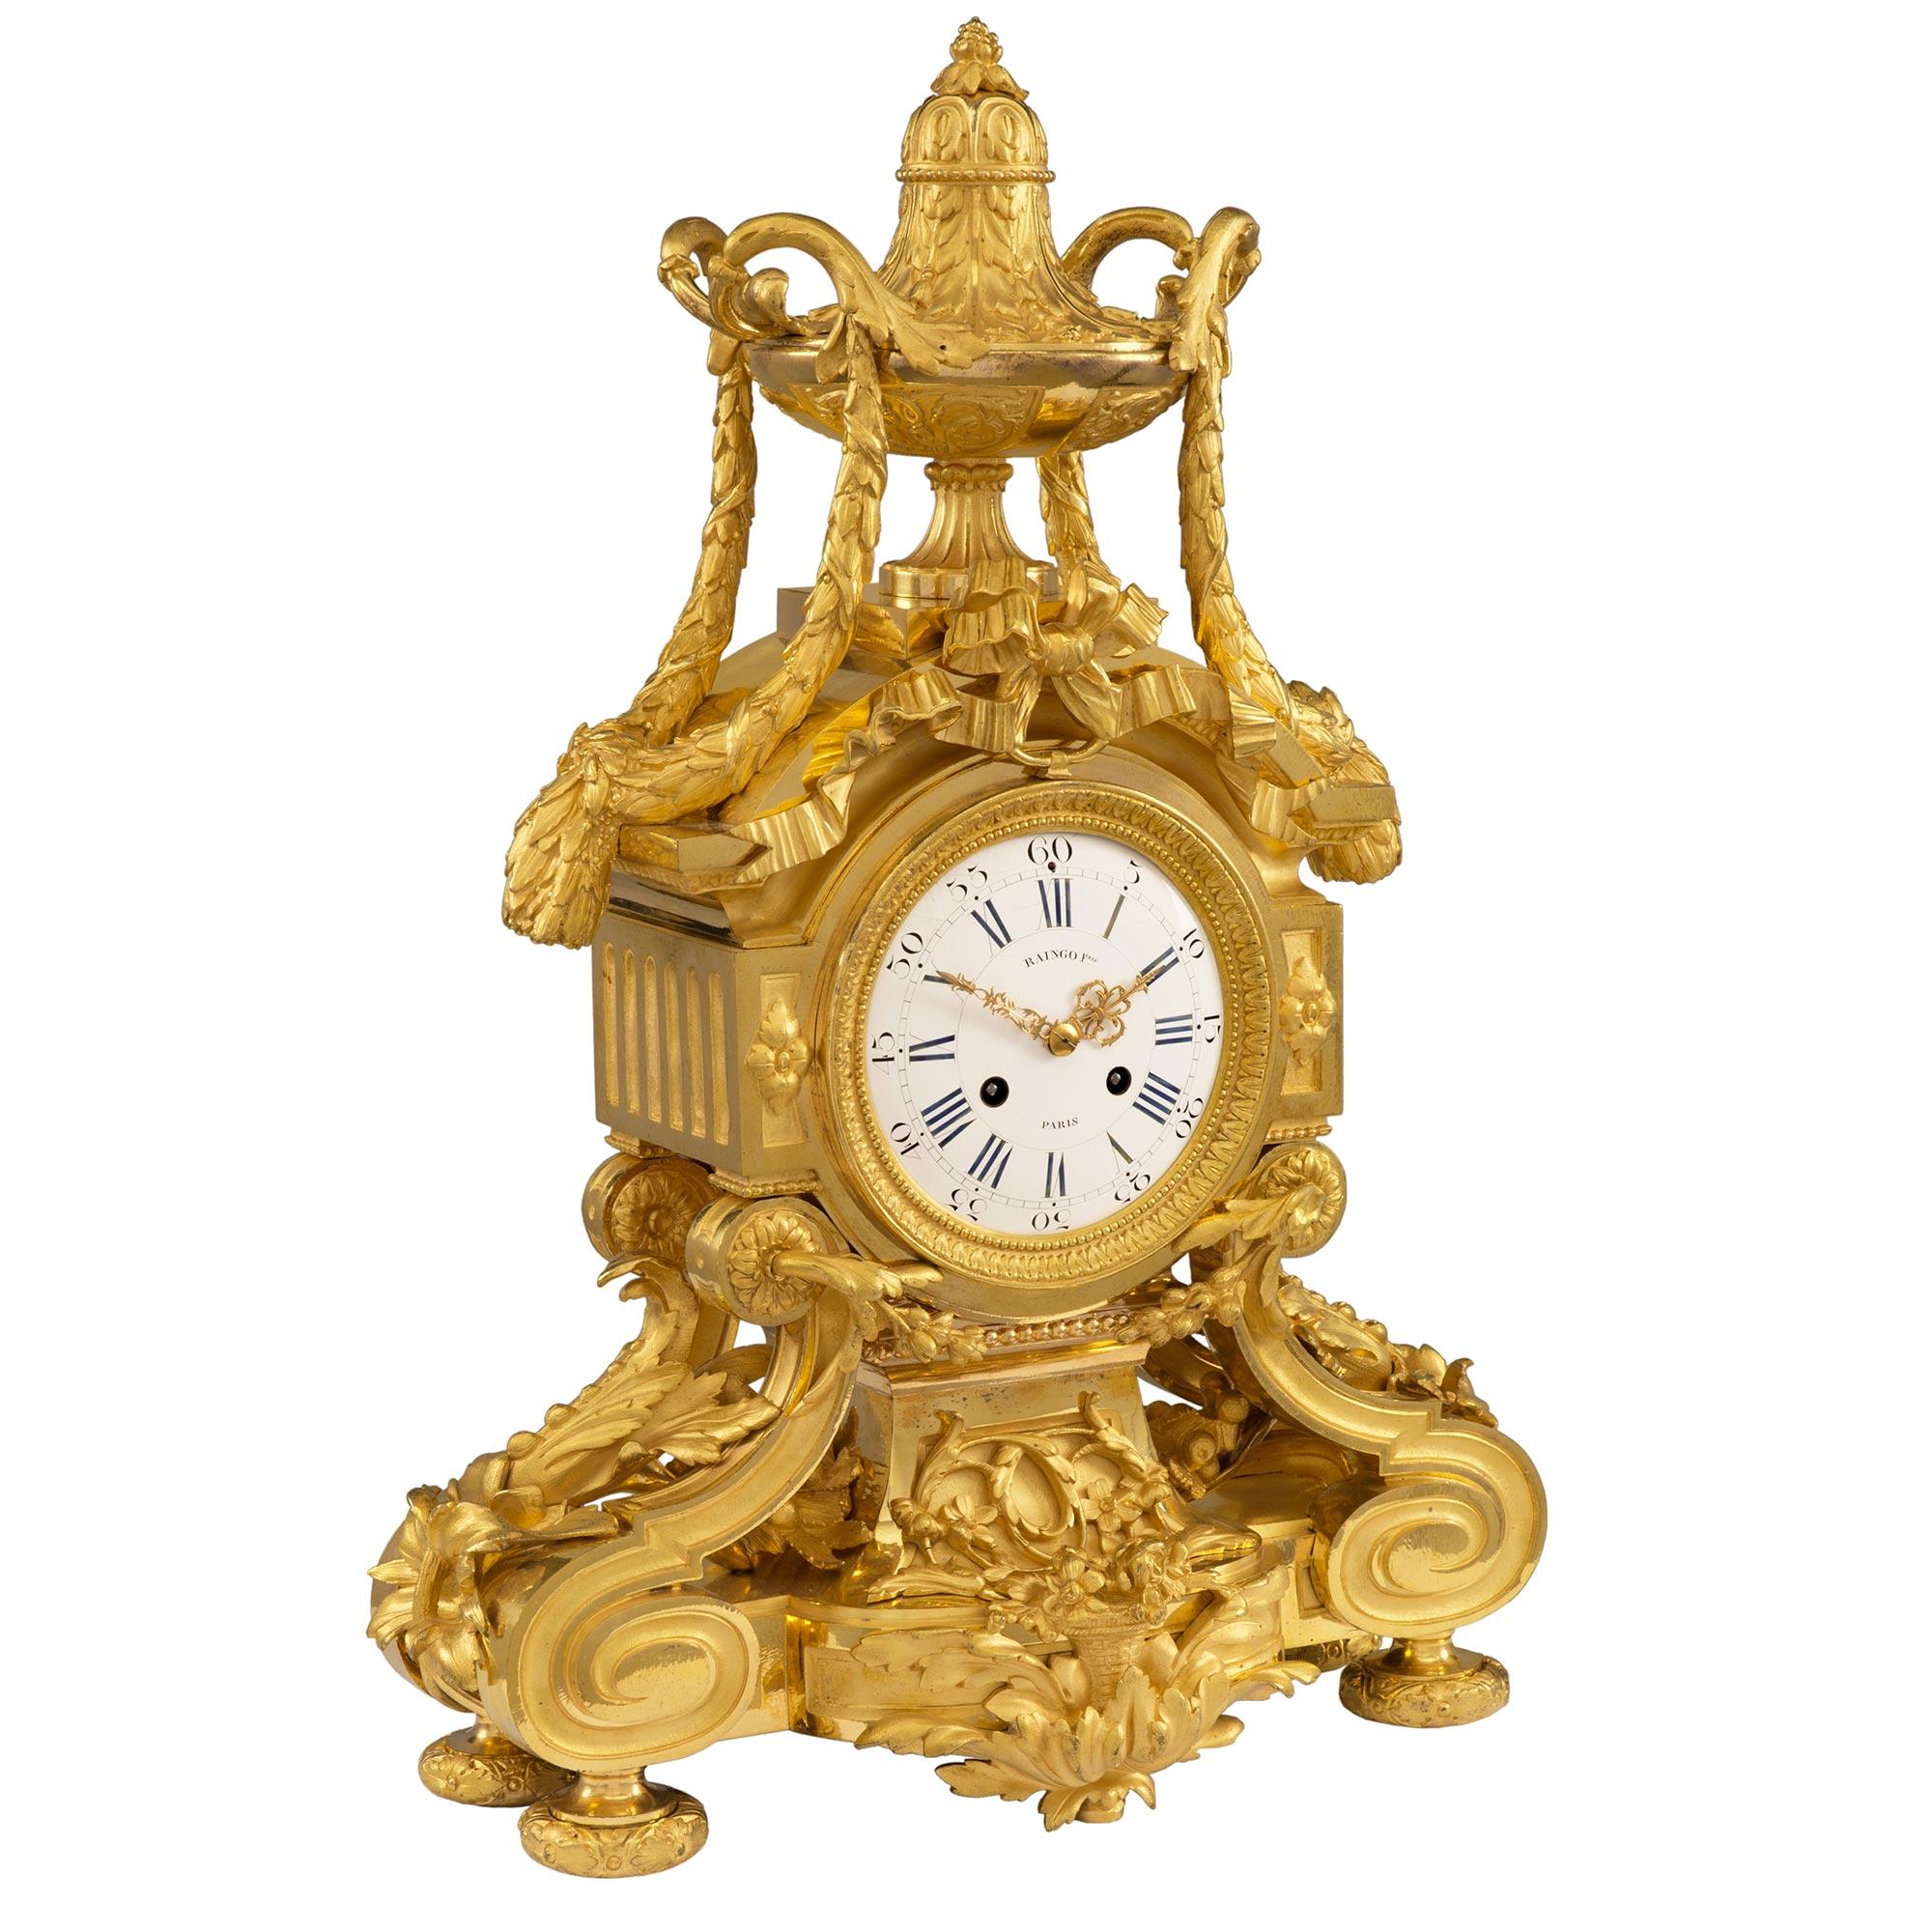 Une pendule en bronze doré de grande qualité, signée Raingo Frères, datant du XIXe siècle et de la période de la Belle Époque. La pendule est surélevée par de jolis pieds marbrés à motif floral. Sous le cadran de l'horloge se trouve une superbe